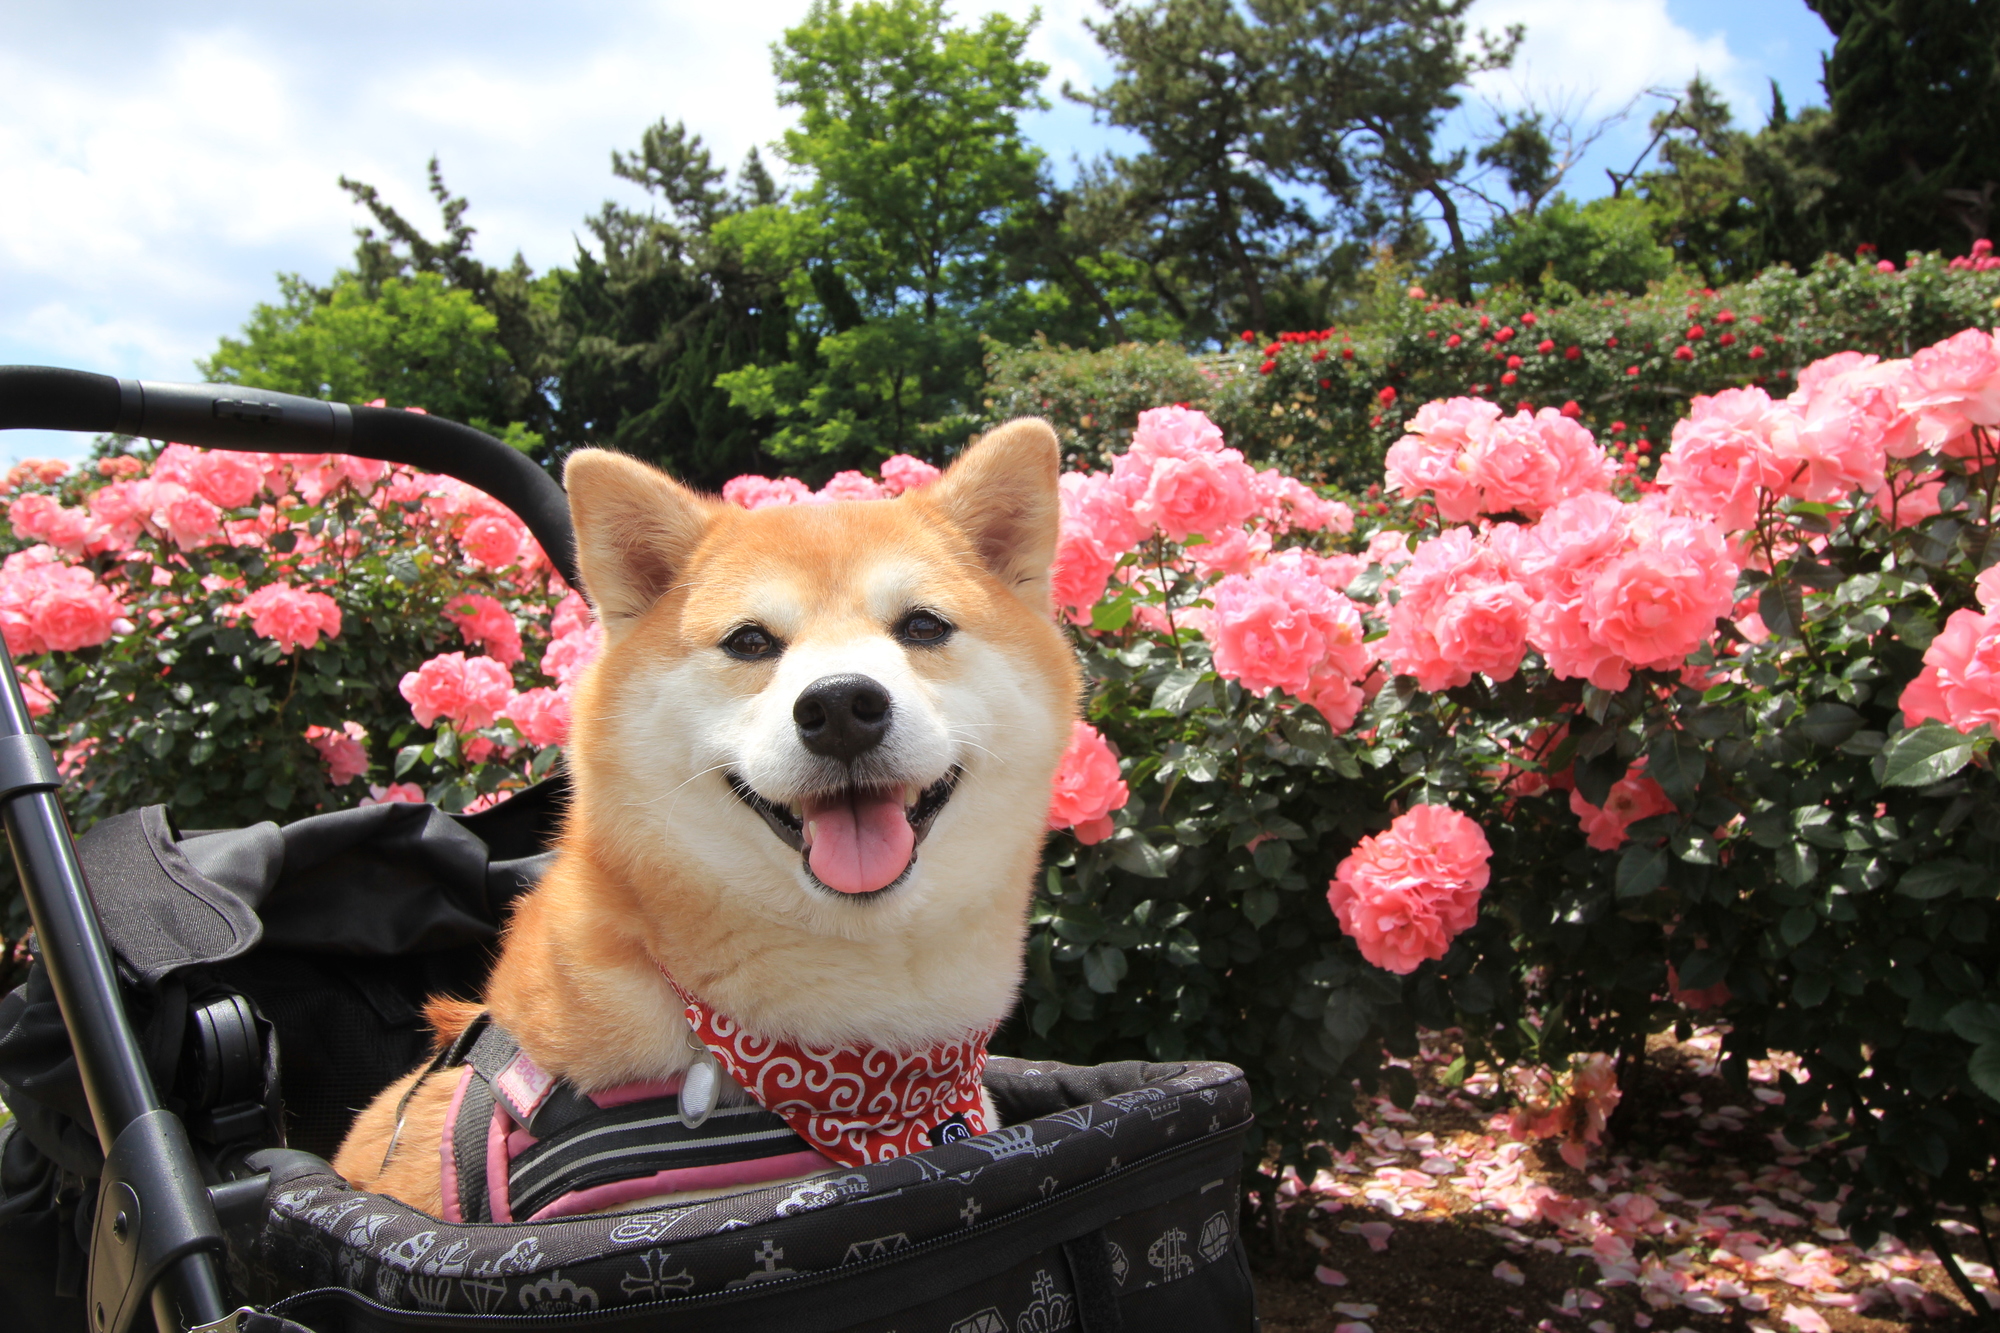 19年版 関東エリア 愛犬と一緒に楽しめる春のバラ園 ローズガーデン特集 愛犬との旅行ならイヌトミィ